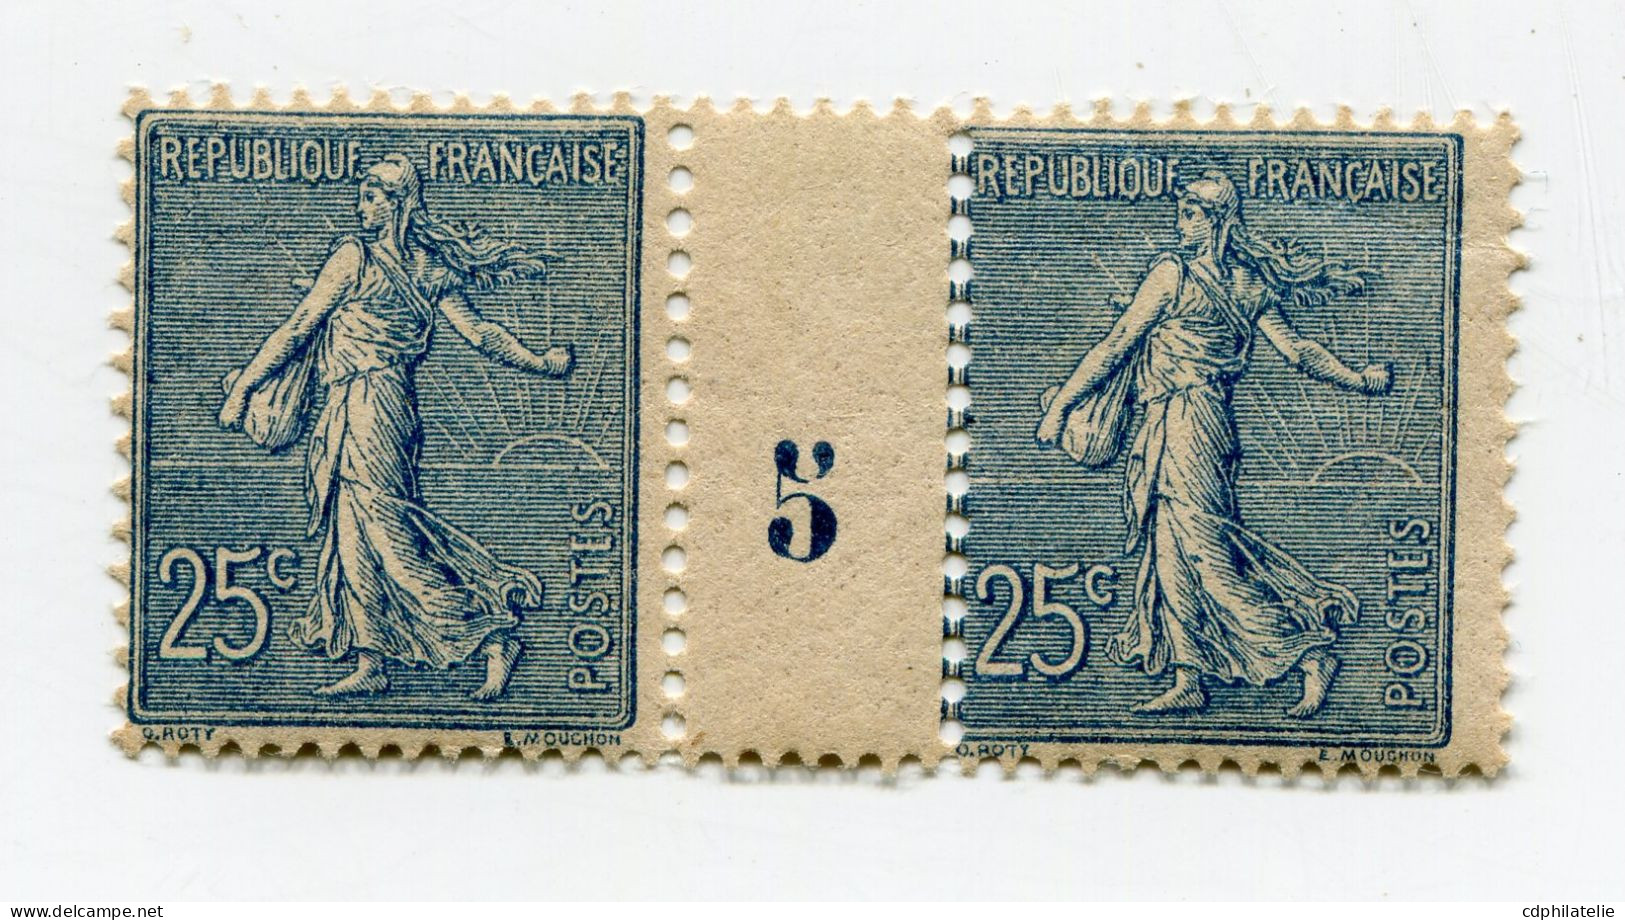 FRANCE N°132 ** TYPE SEMEUSE LIGNEE EN PAIRE AVEC MILLESIME 5 ( 1905 ) - Millesimes